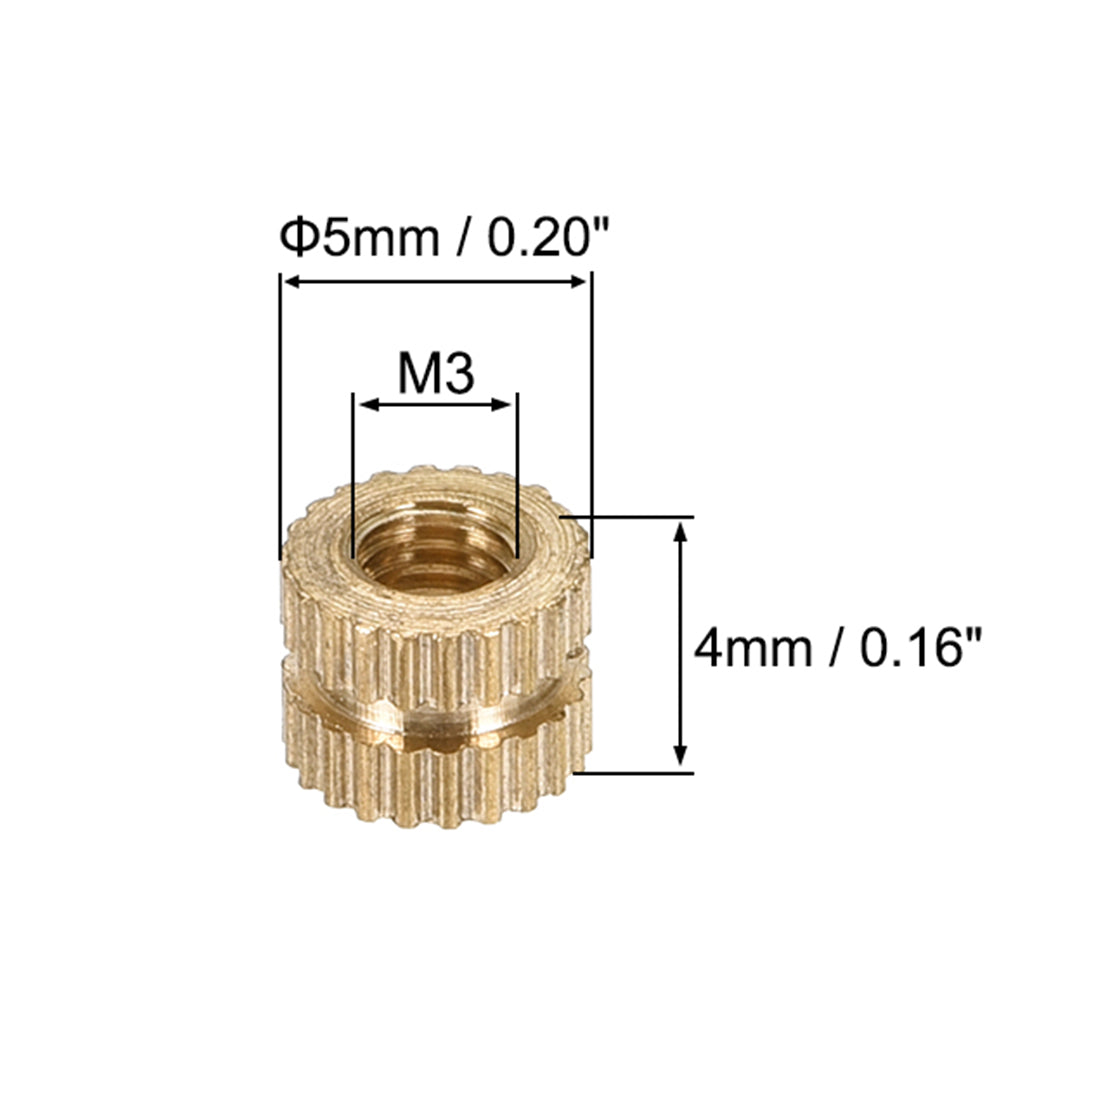 uxcell Uxcell Knurled Insert Nuts, M3 x 5mm(L) x 5mm(OD) Female Thread Brass Embedment Assortment Kit 50pcs